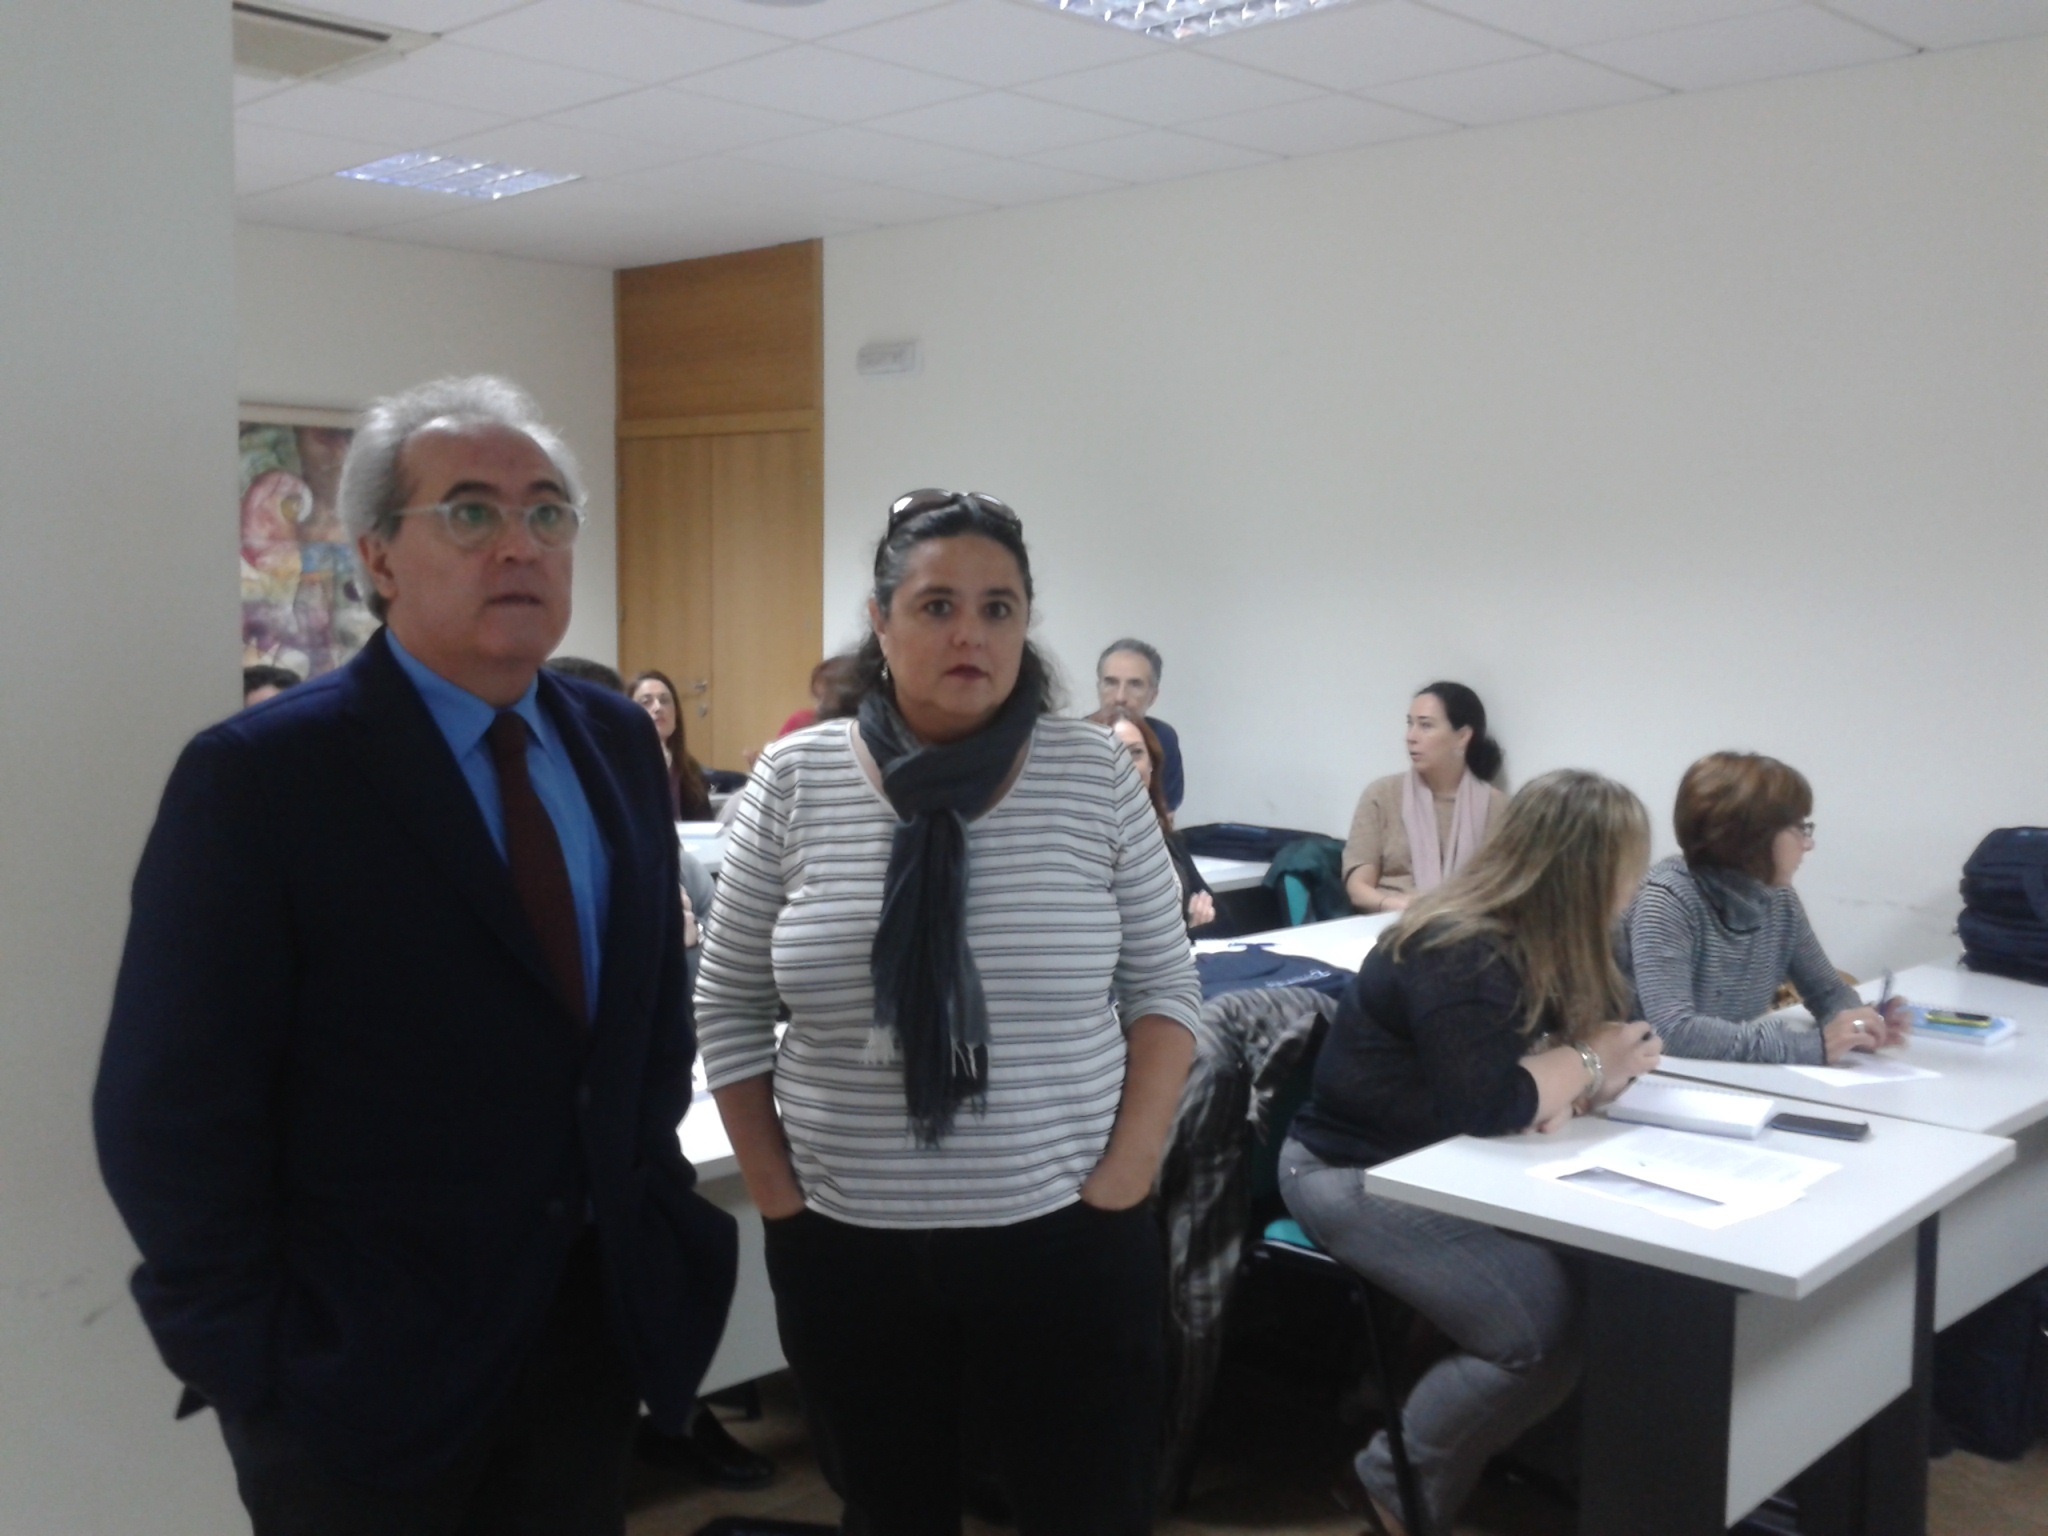 La Junta organiza en Córdoba un curso para formar en inmigración e interculturalidad a profesionales del Derecho